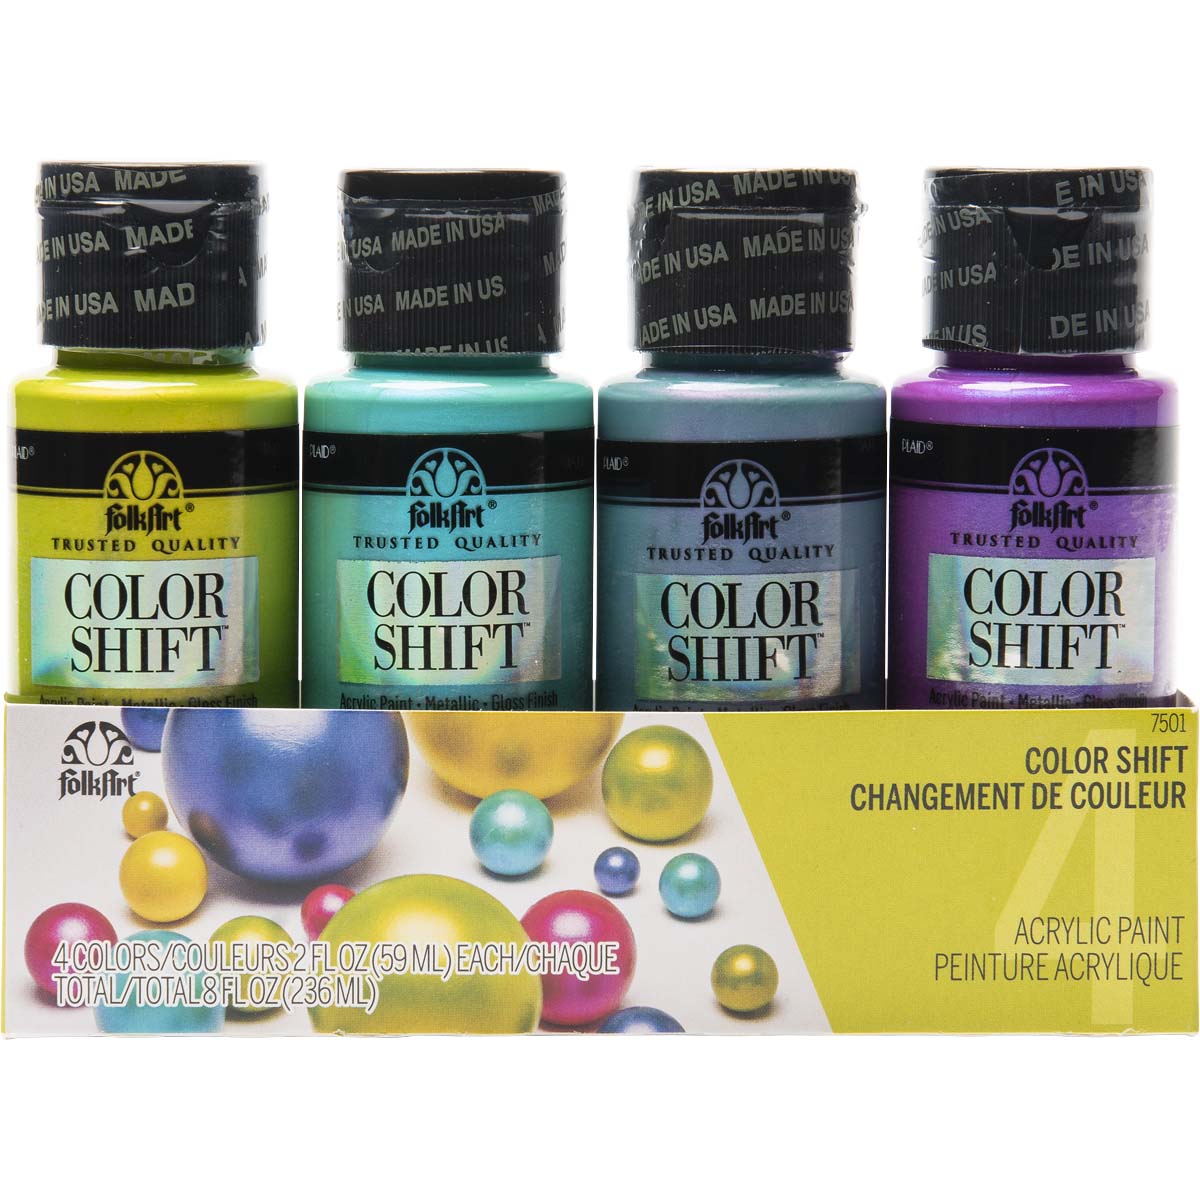 Shop Plaid FolkArt ® Color Shift™ Acrylic Paint - Silver Flash, 2 oz. -  5456 - 5456